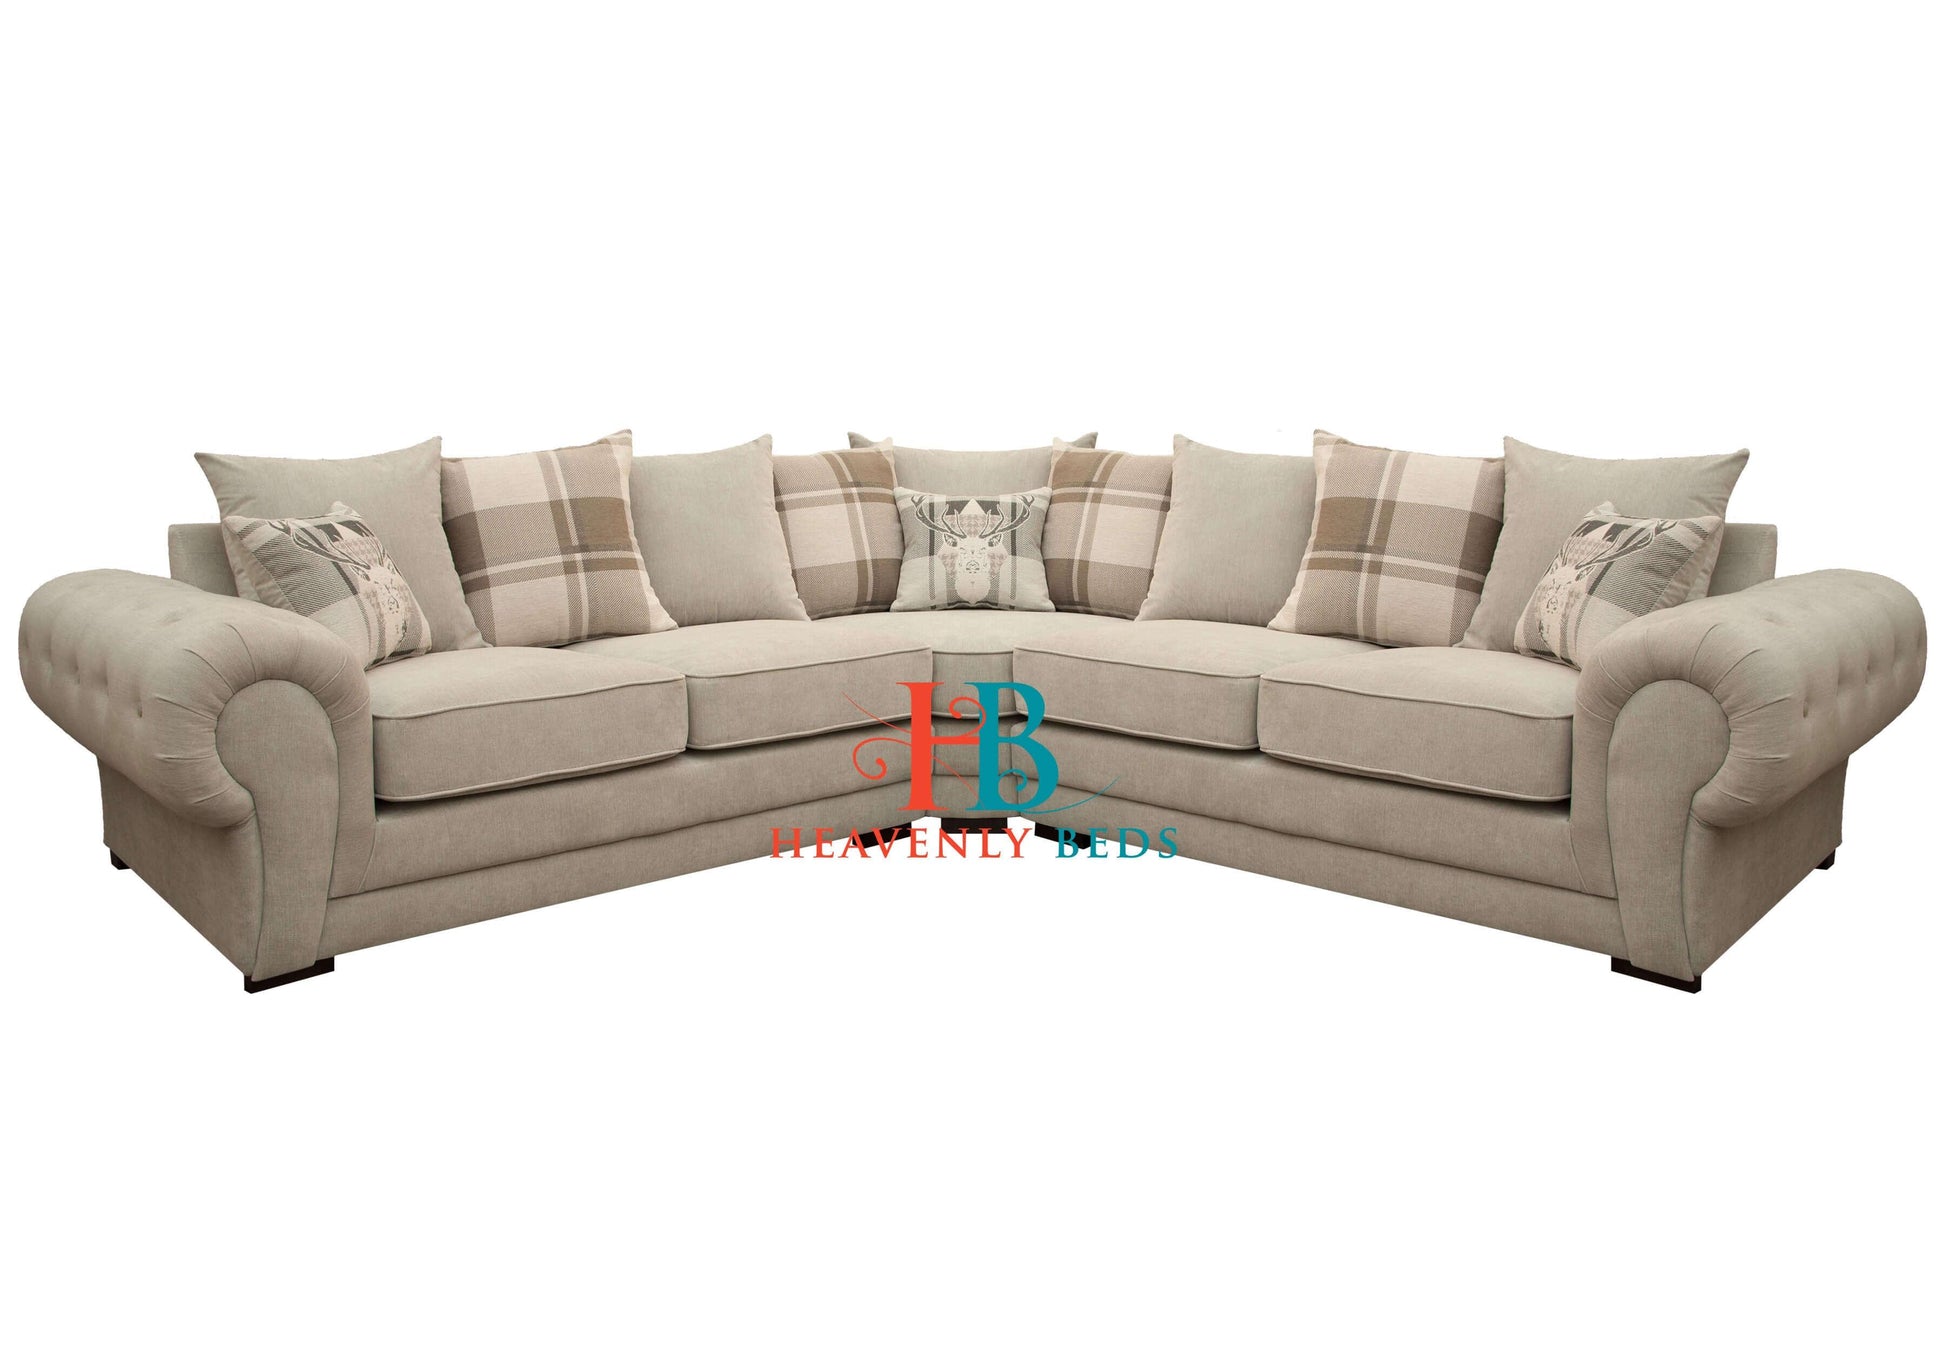 Verona Corner Sofa 2c2 - Available in 1c2, 2c2, 2c3, 3c2, 3c3 + Custom Sizes